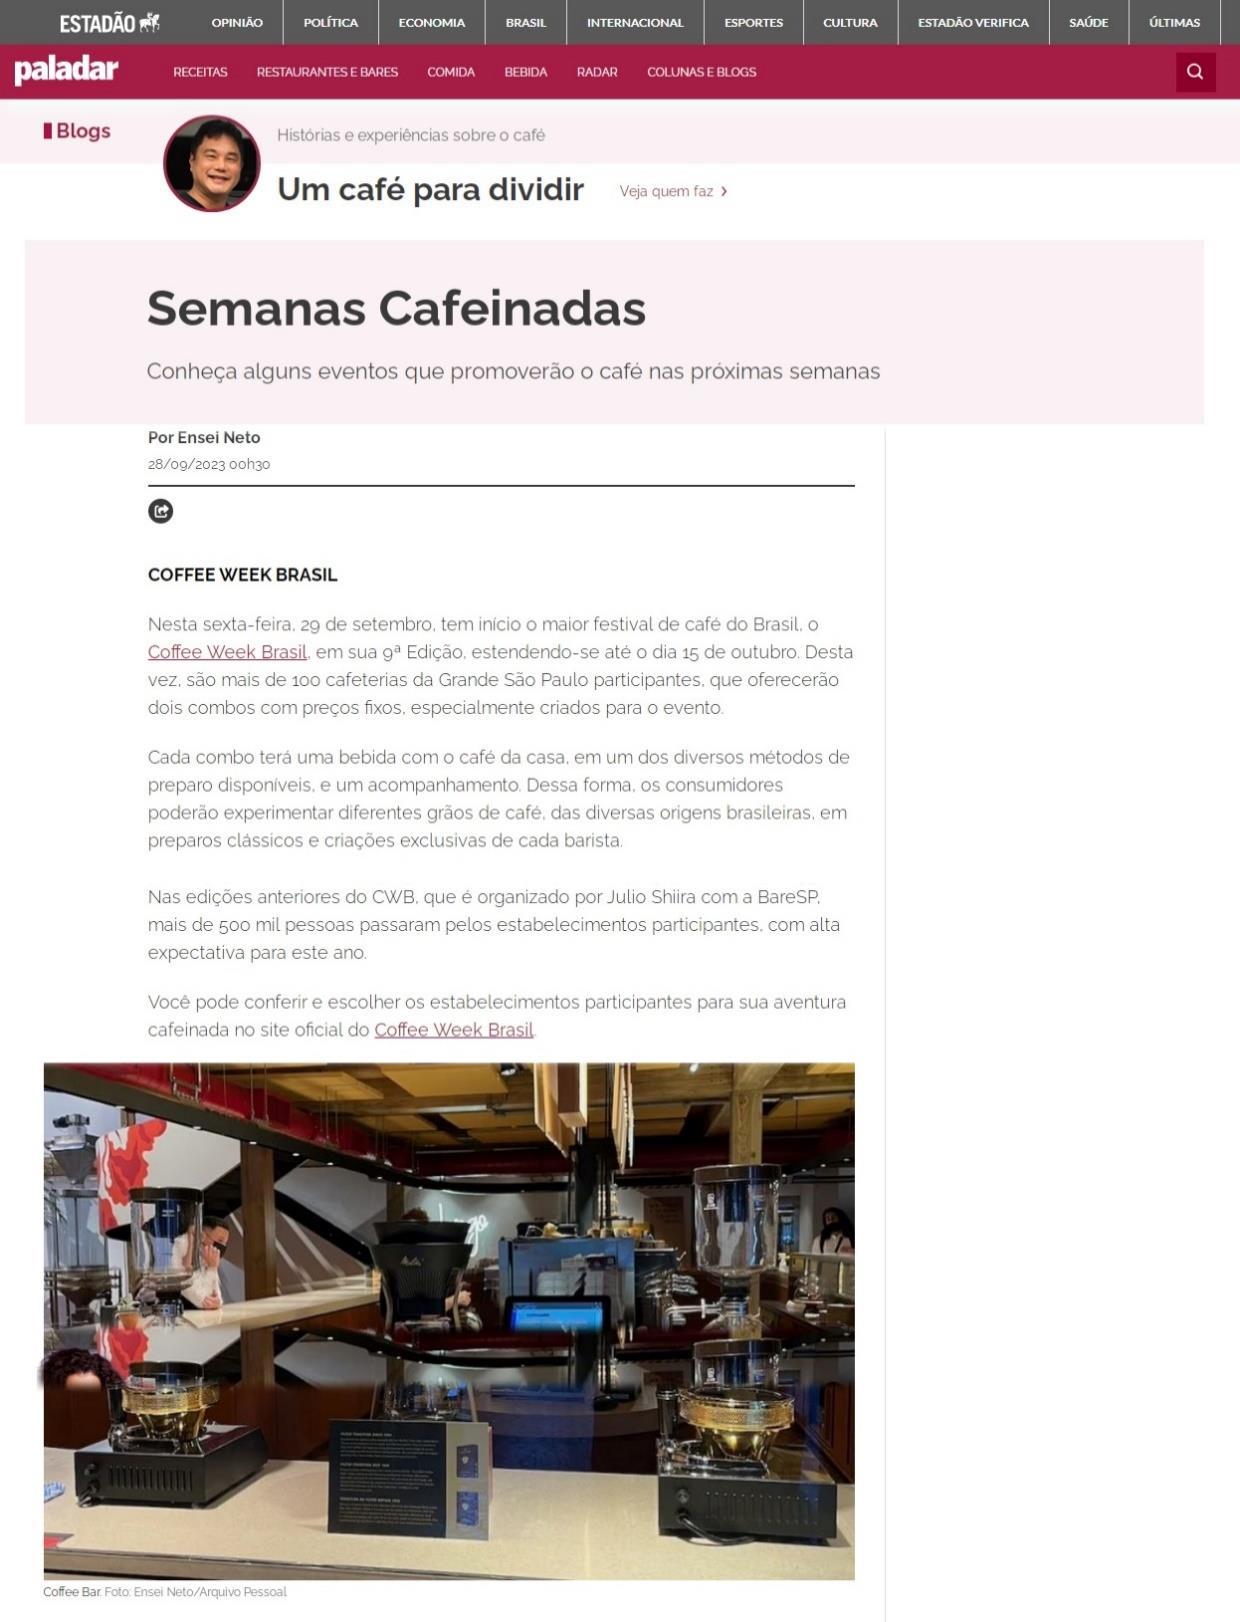 Portal Estadão Paladar – Um Café para Dividir